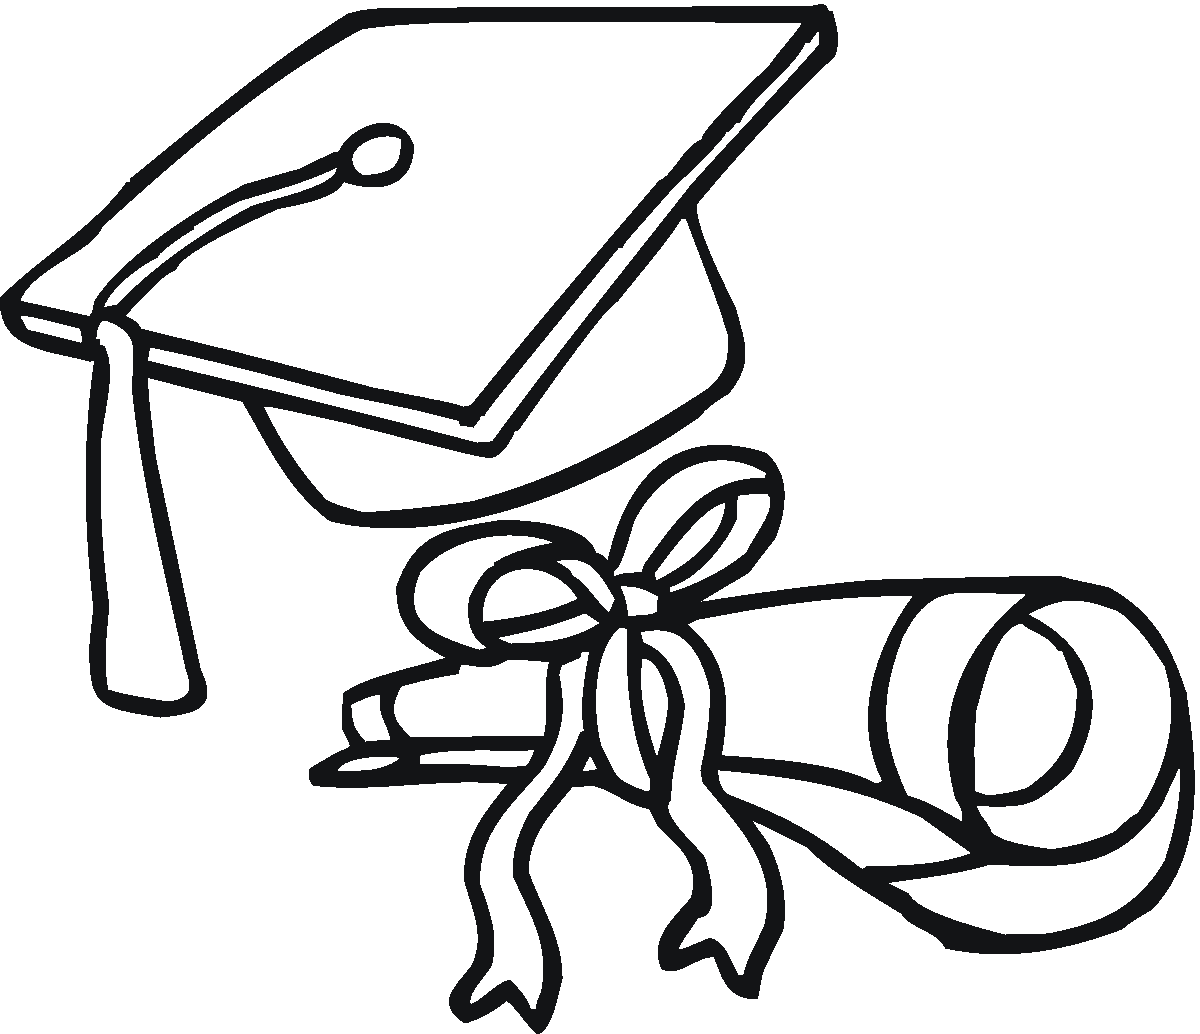 Graduation Cap Drawing